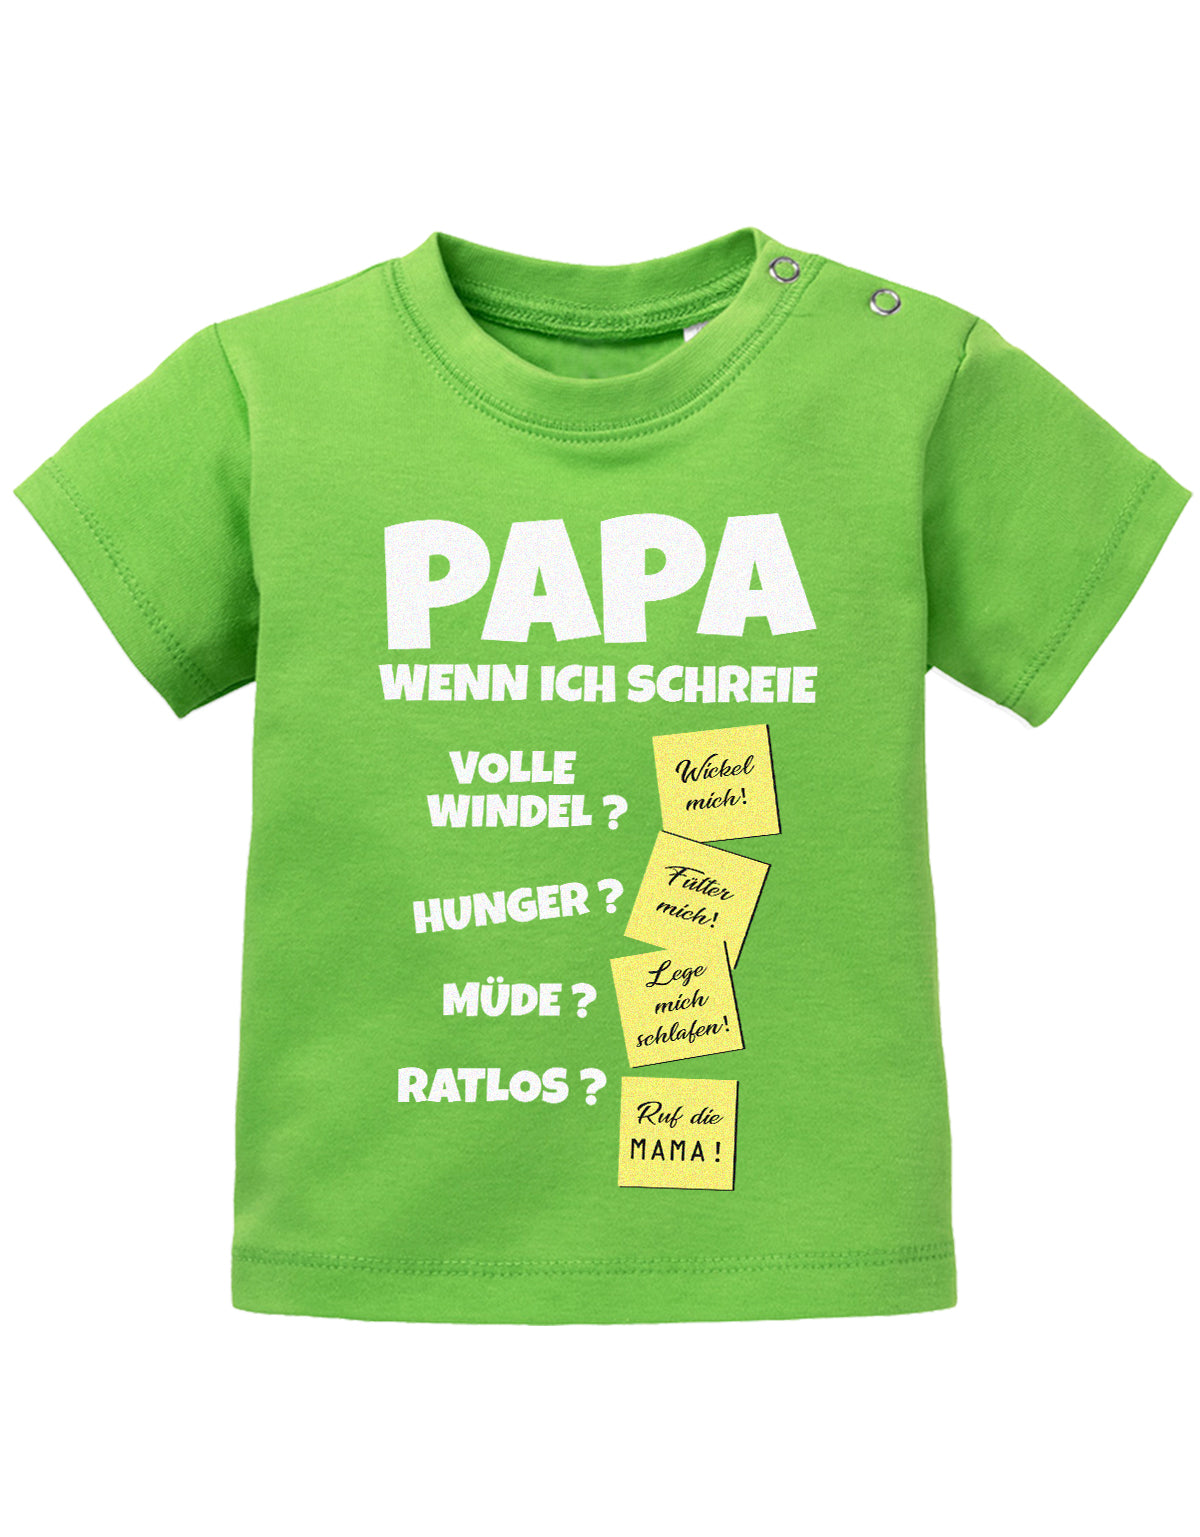 Lustiges süßes Sprüche Baby Shirt Papa wenn ich schreie - Notizen Lösungen. Grün